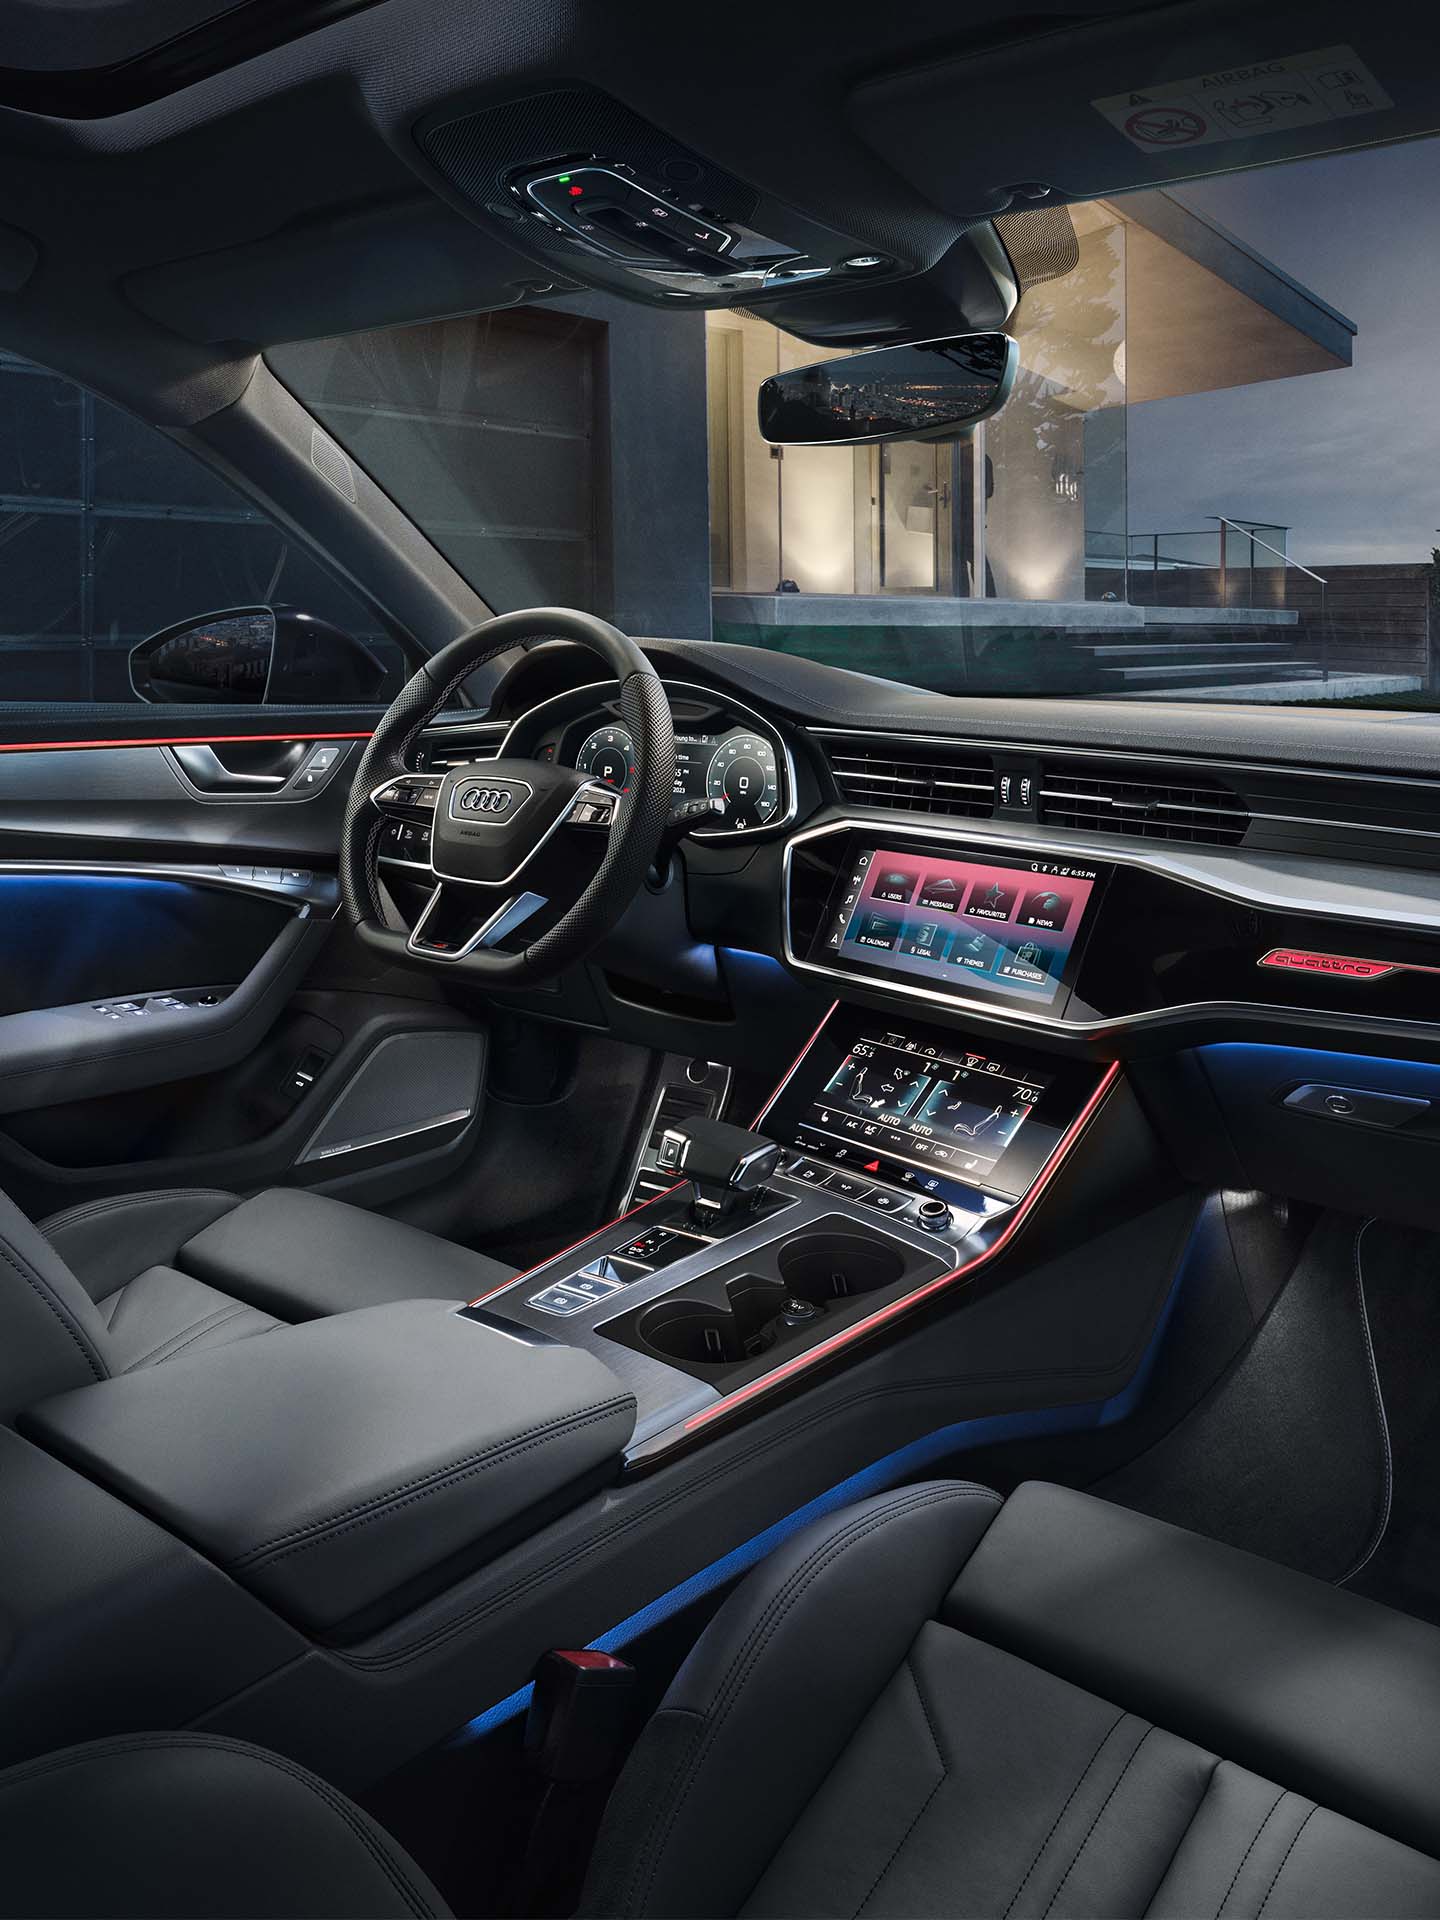 Audi thema's voor interieurverlichting